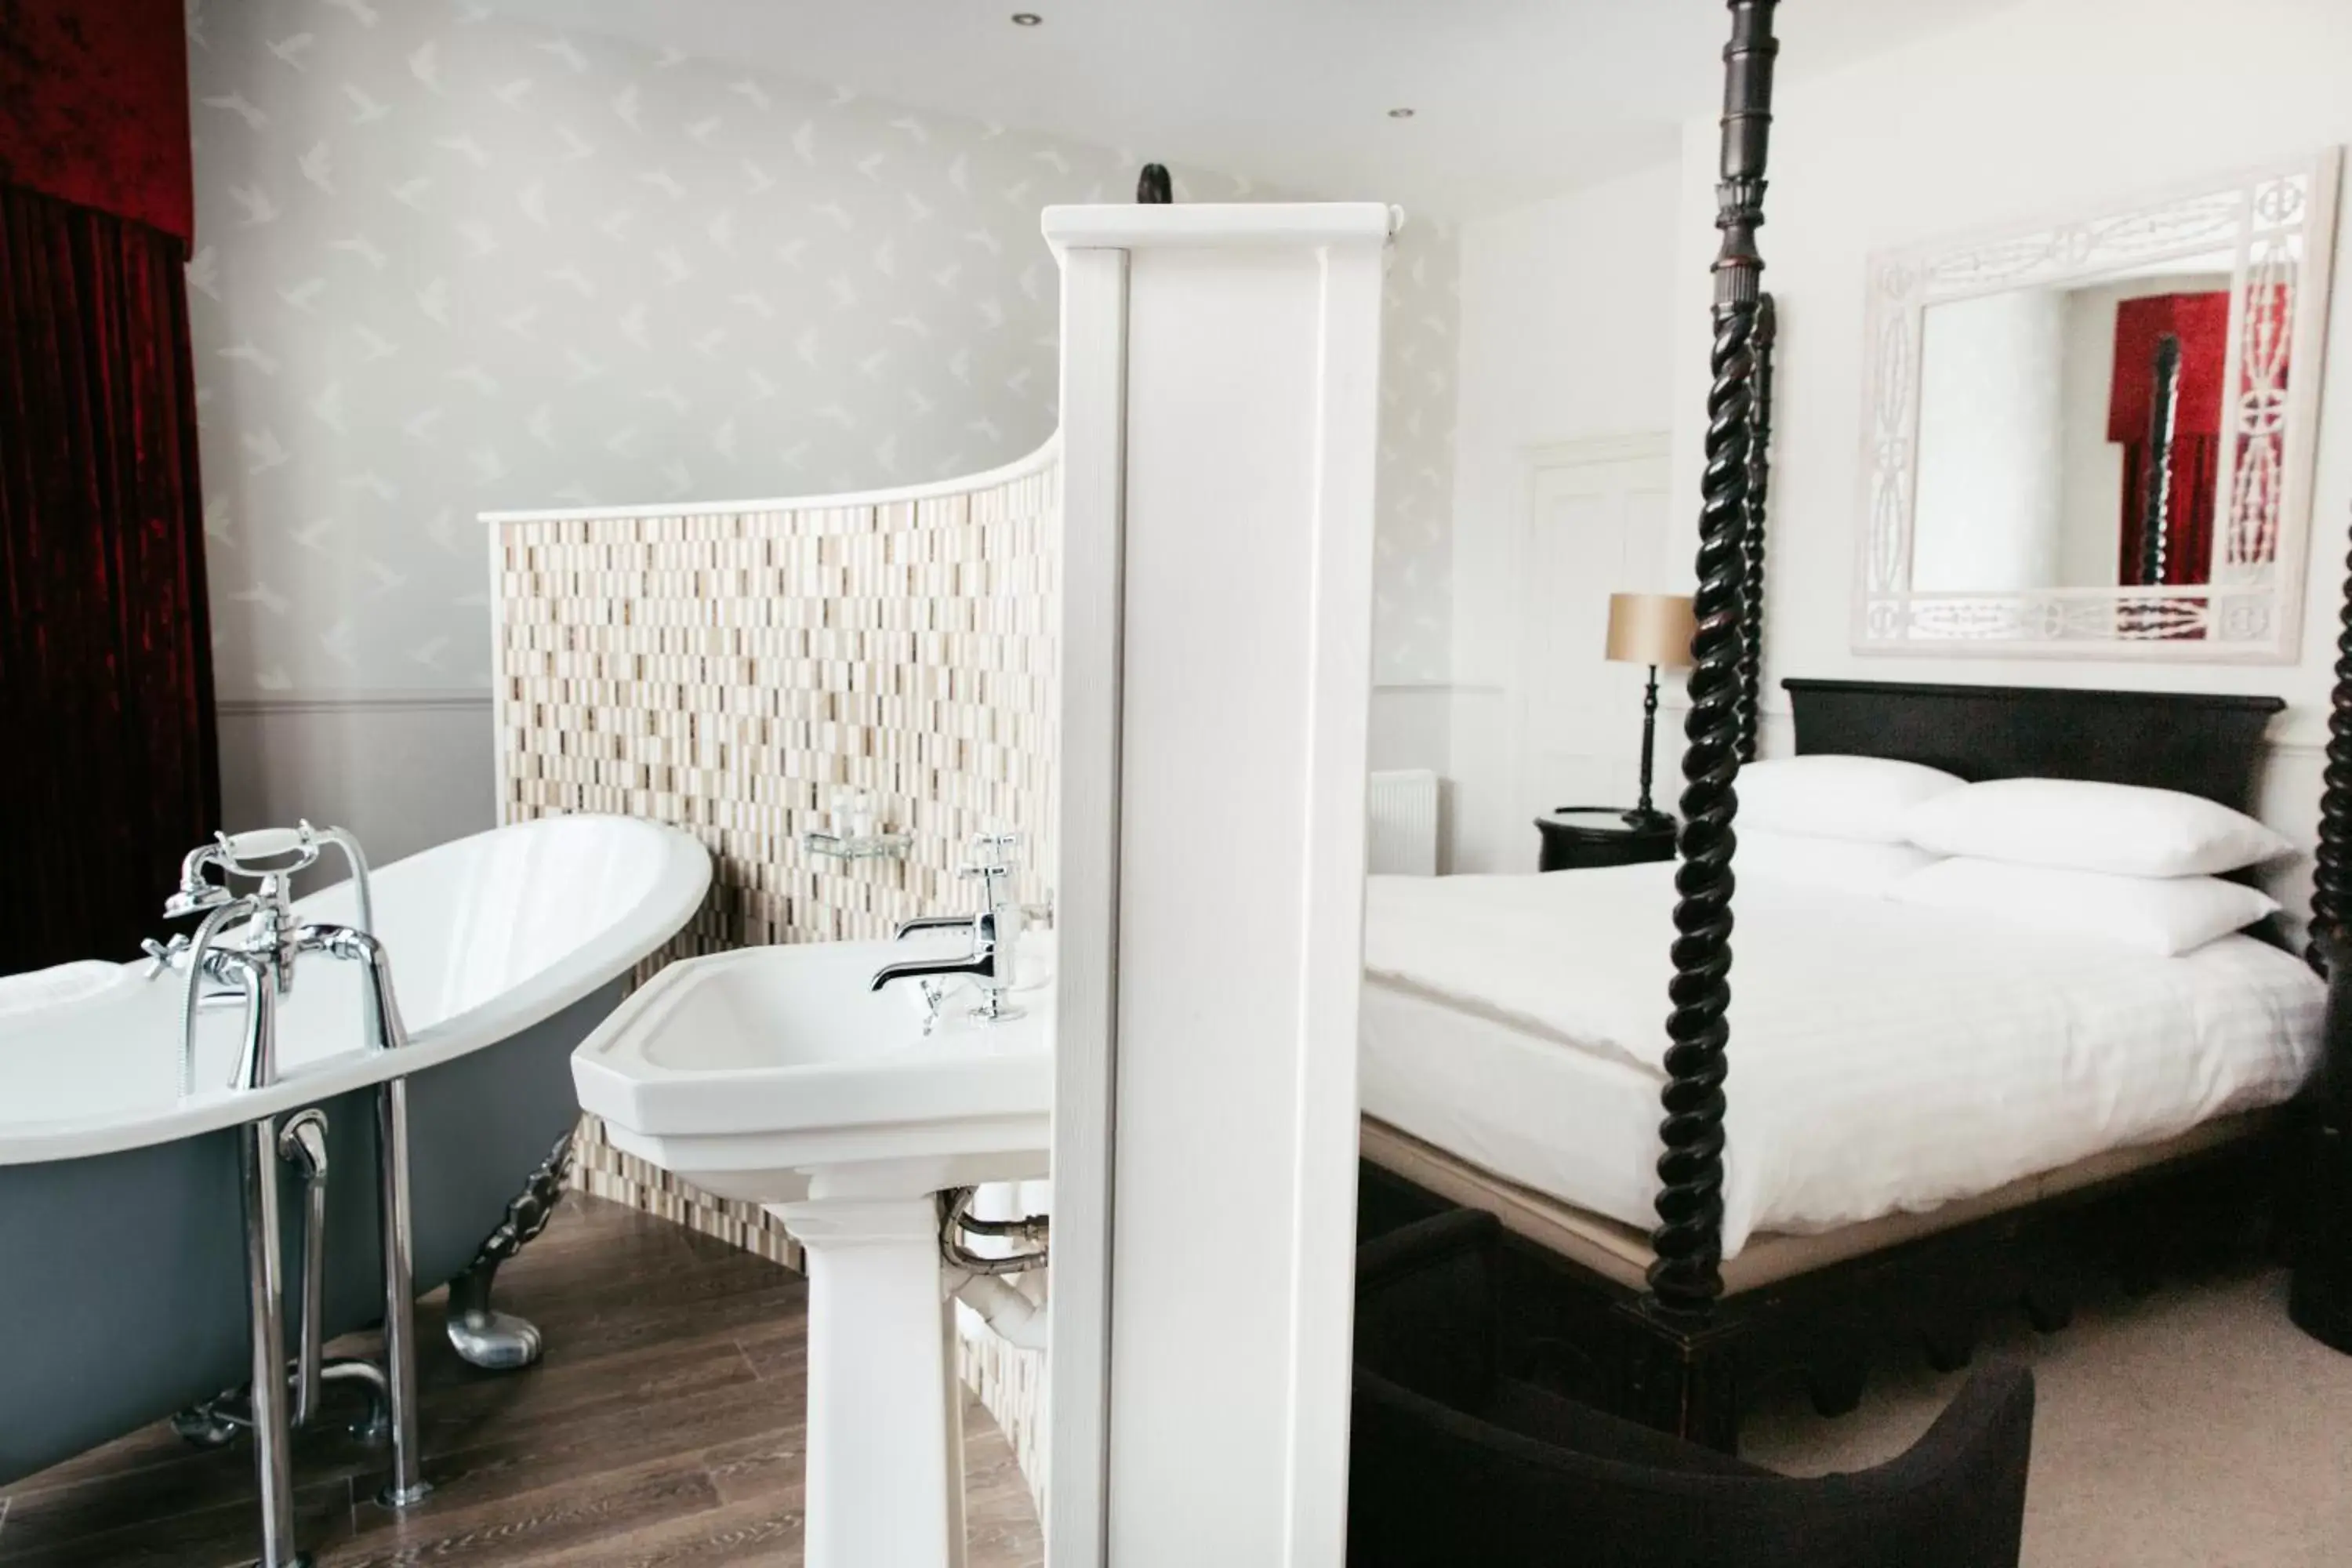 Bedroom, Bathroom in Crown Hotel